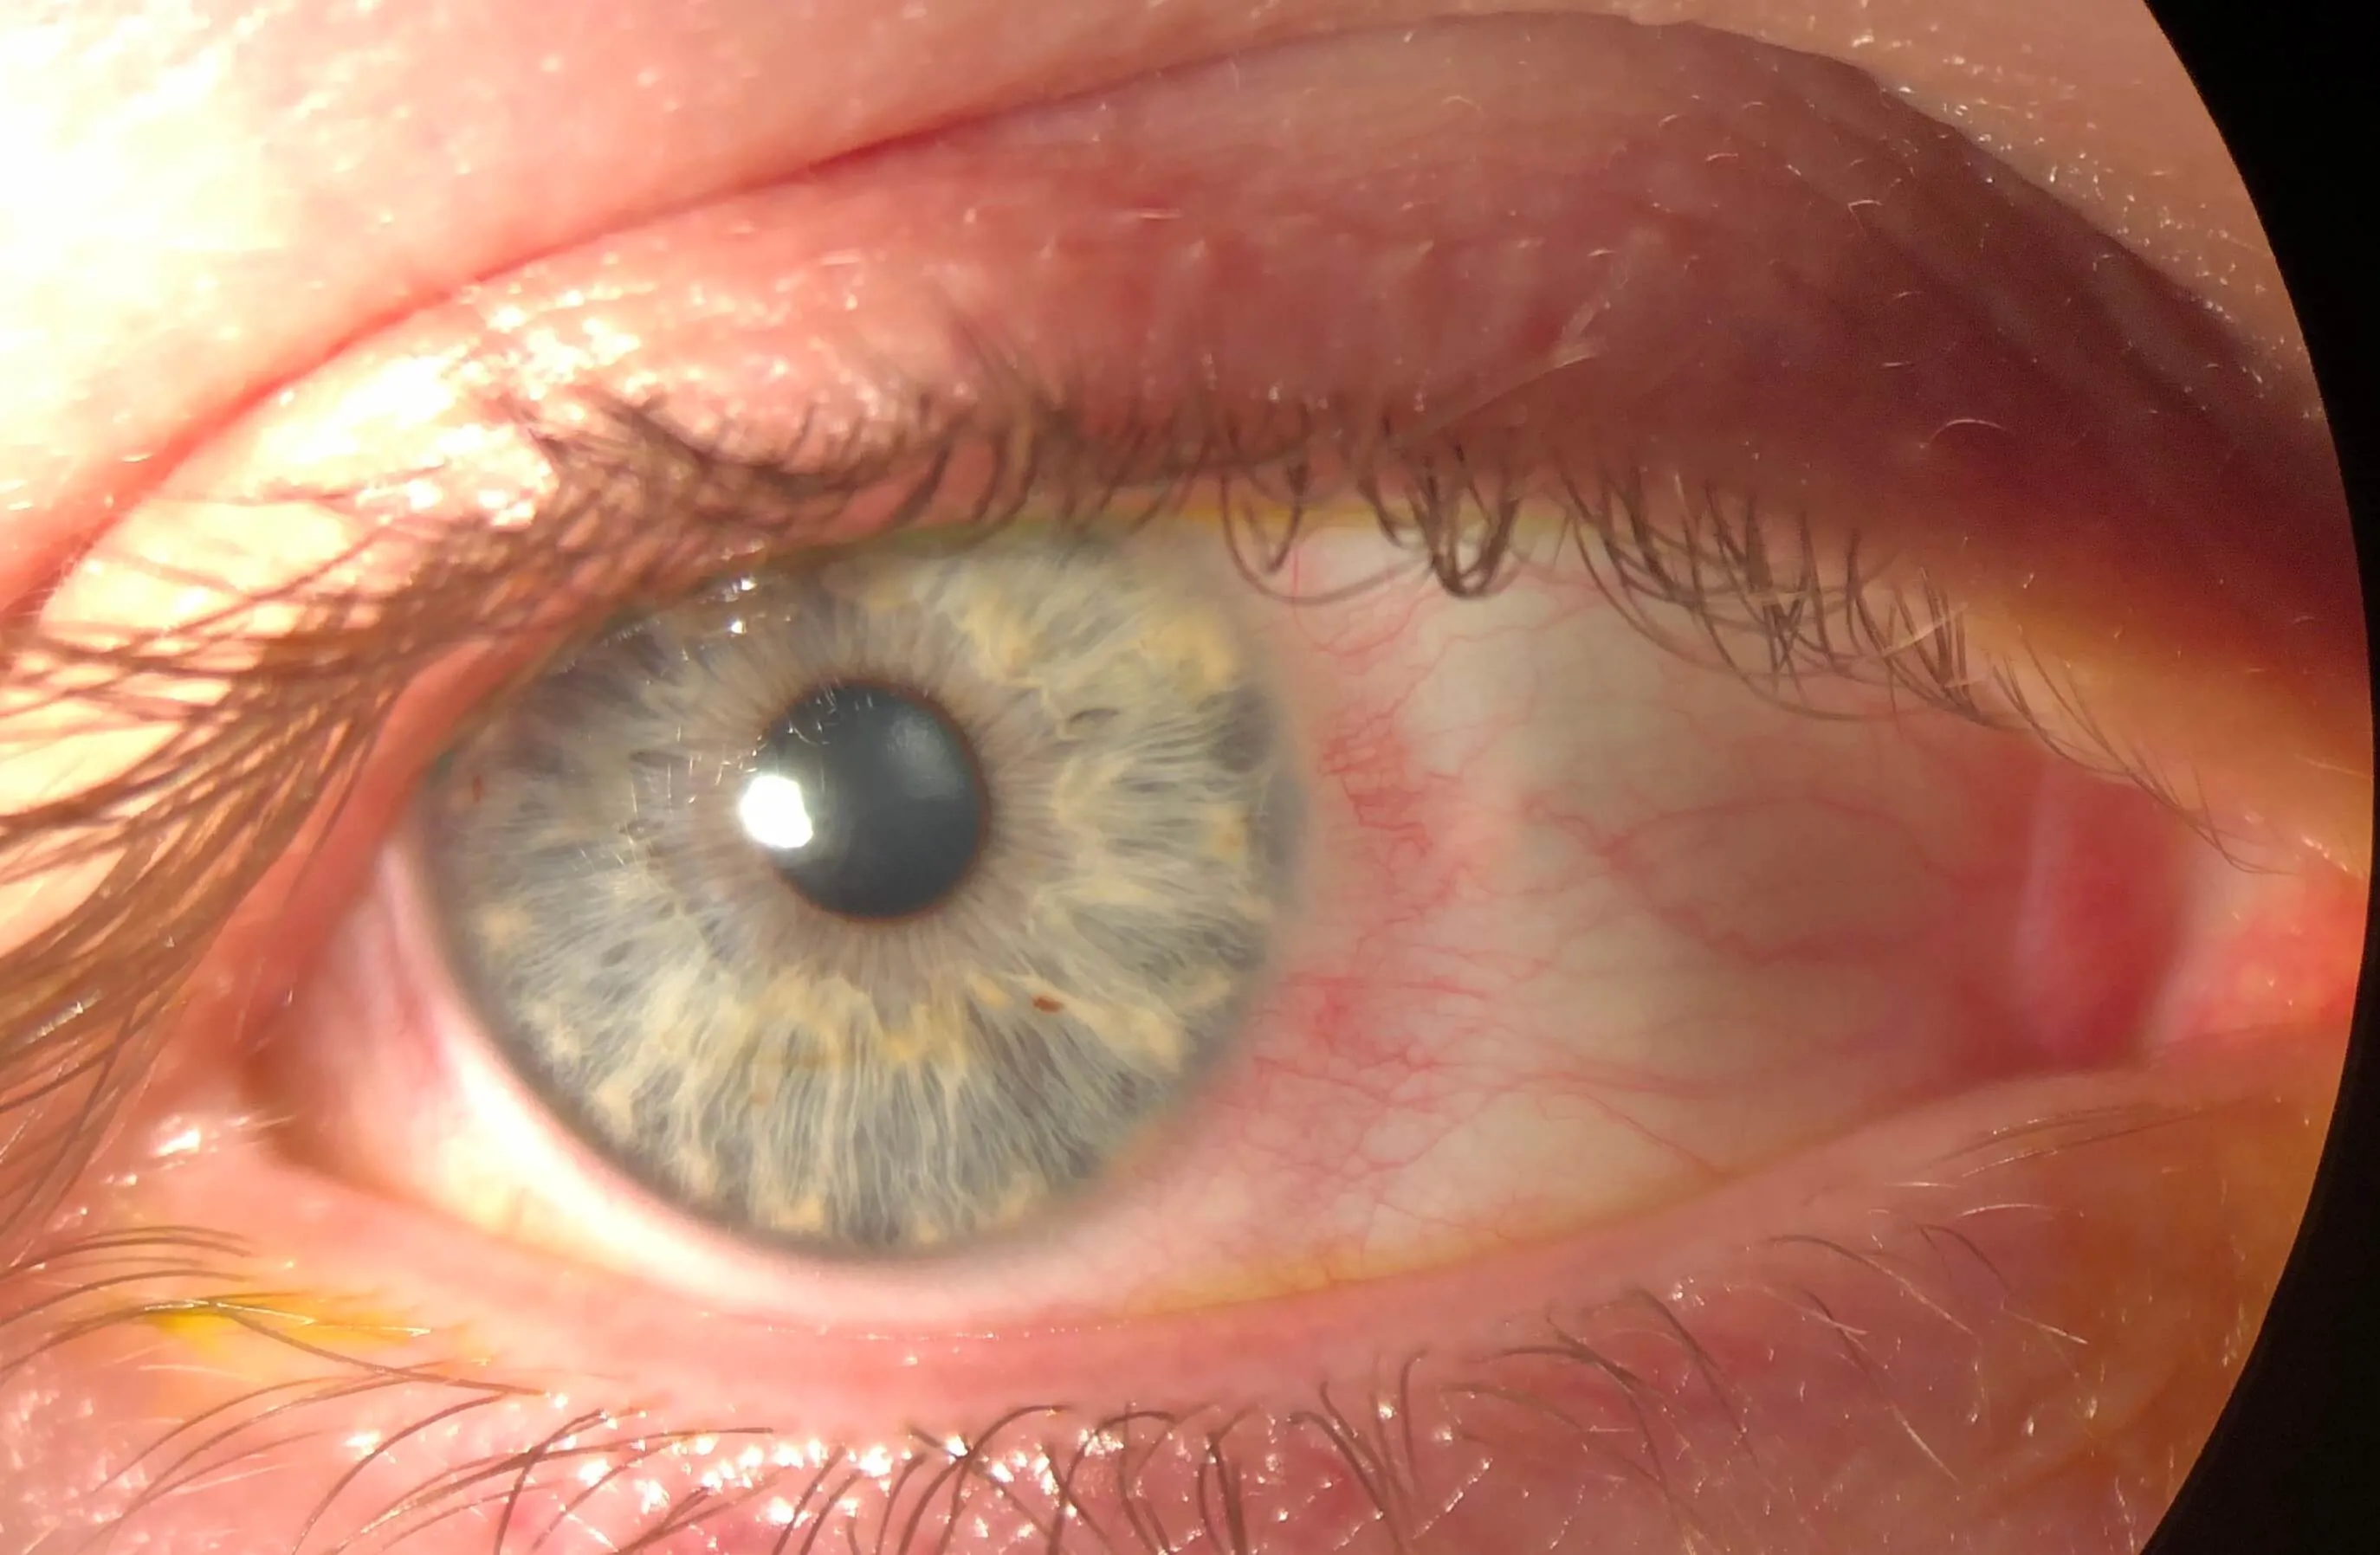 zarudnutie spojoviek ako jeden z príznakov očné infekcie koronavirem